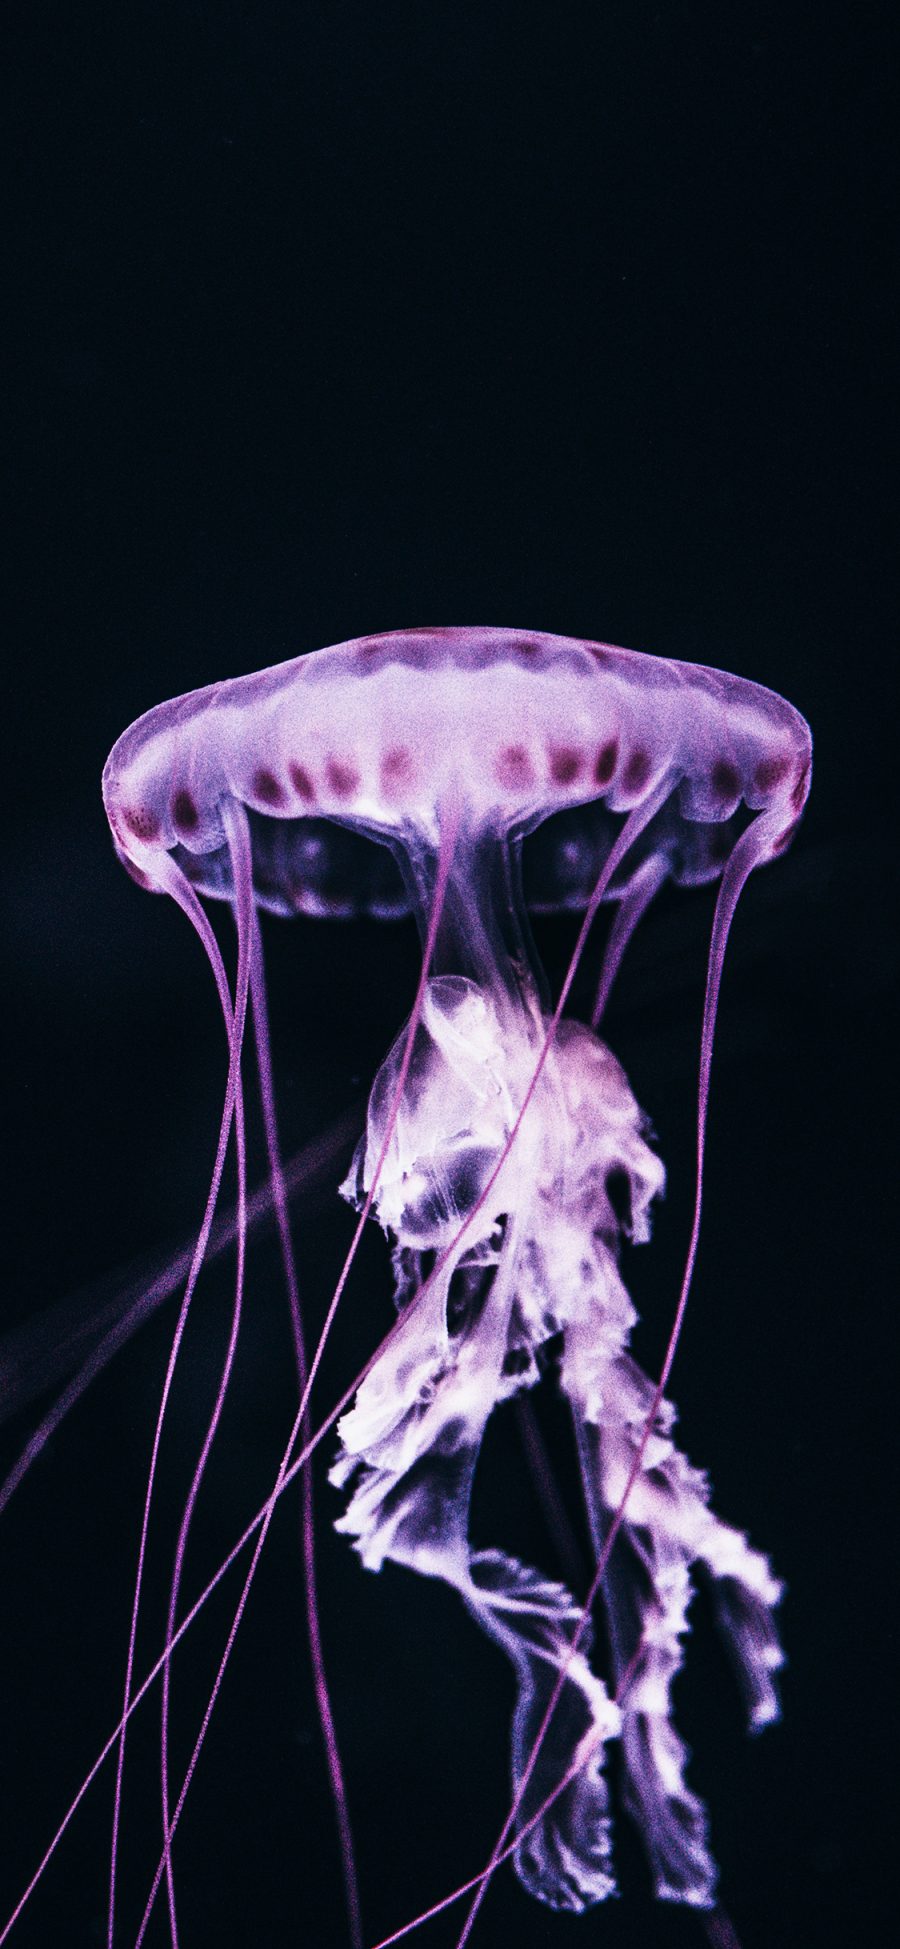 [2436×1125]海洋生物 水母 透明 触角 苹果手机壁纸图片